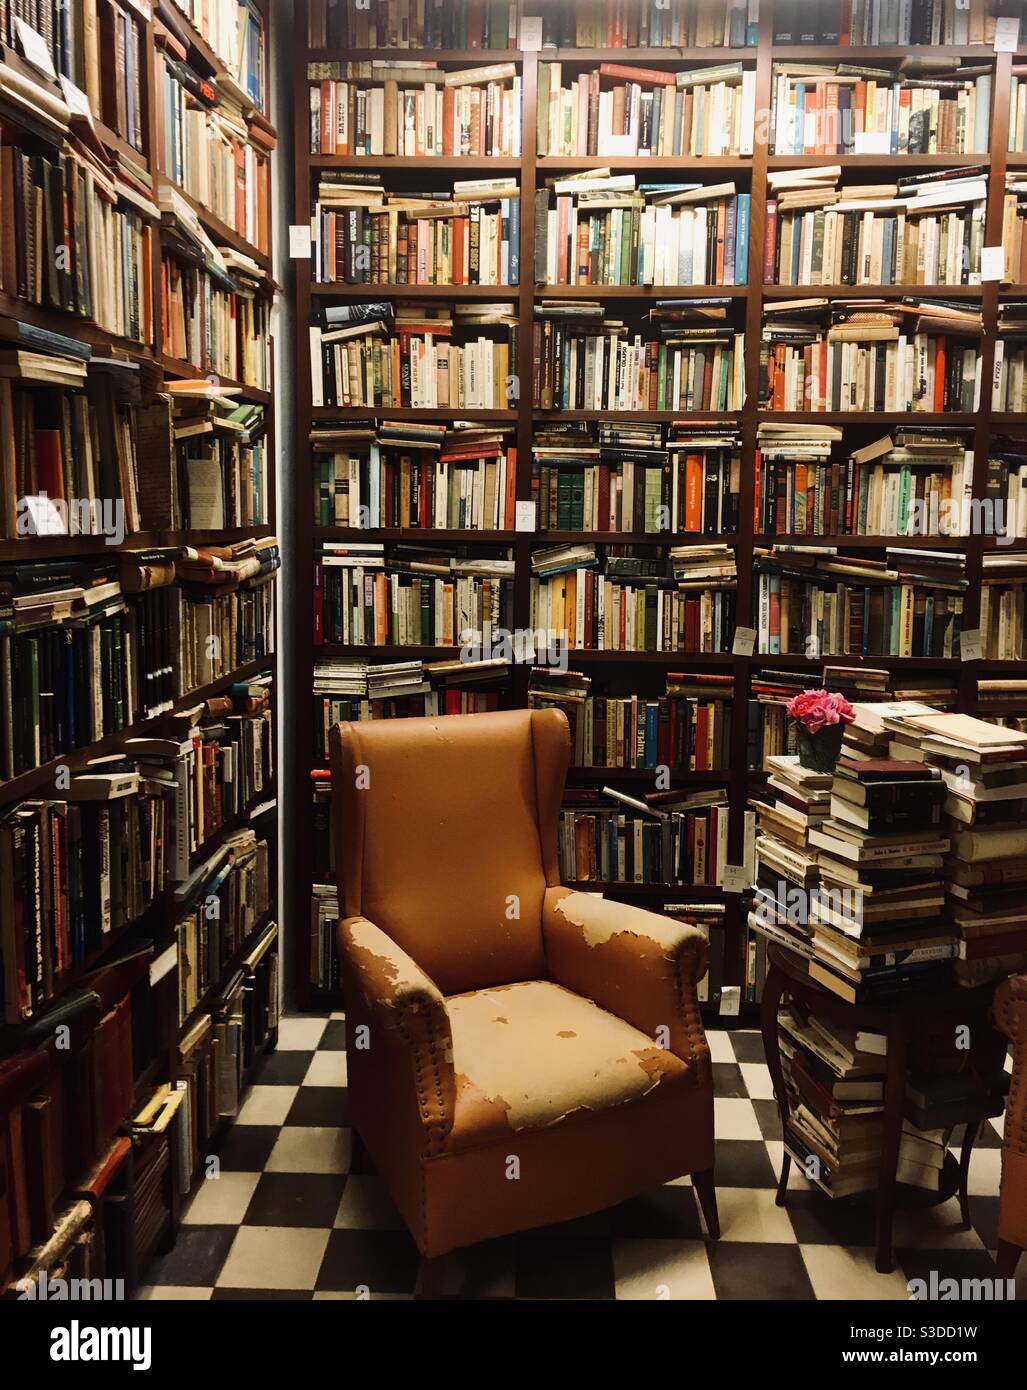 Ein alter Ledersessel in einem Raum voller Bücher Stockfoto